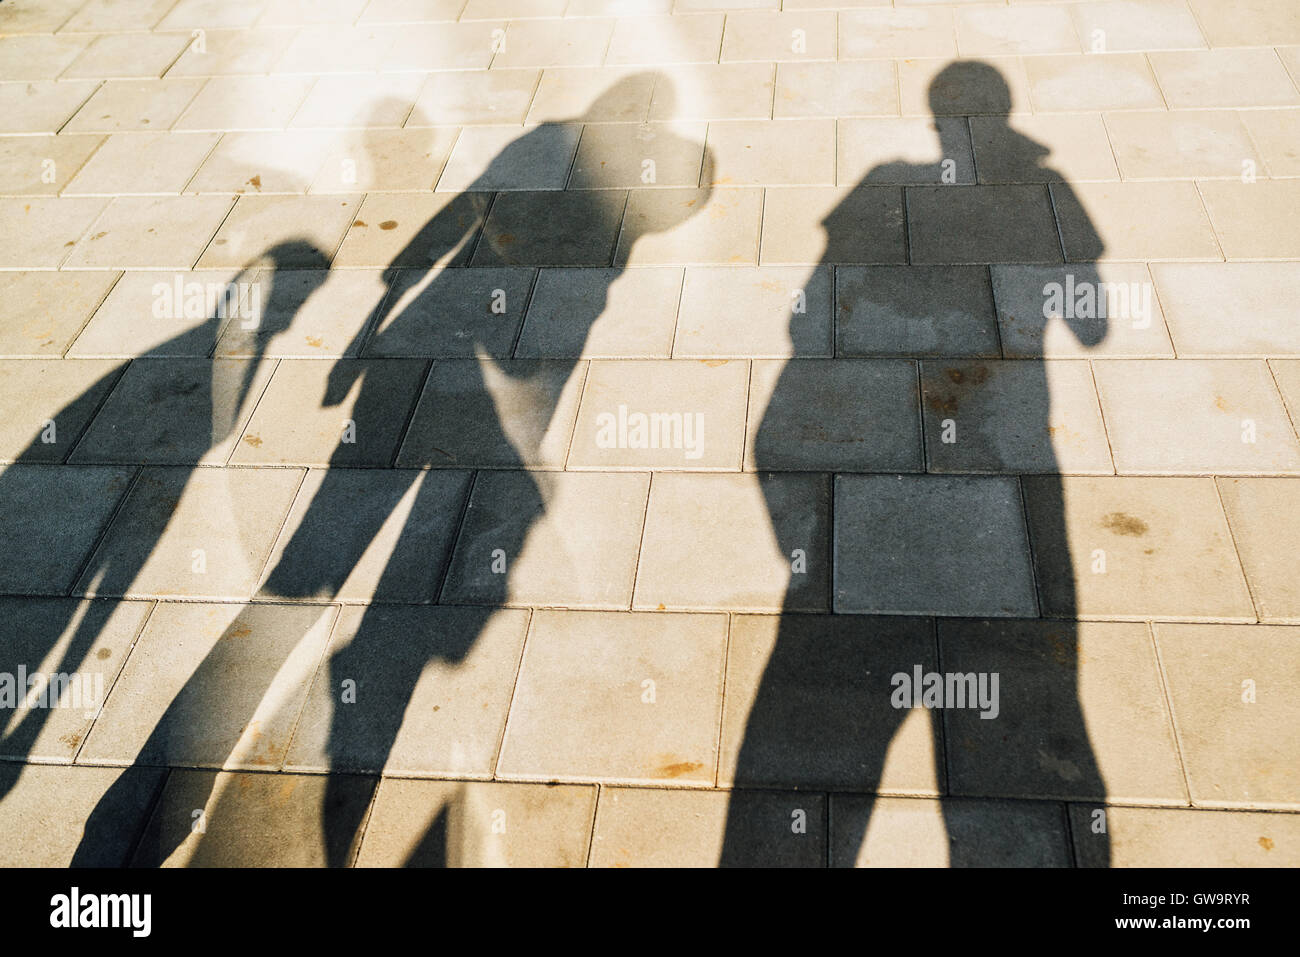 Les gens casting shadows sur le trottoir, quatre jeunes hommes et femmes d'éclipser des tuiles béton de la rue Banque D'Images